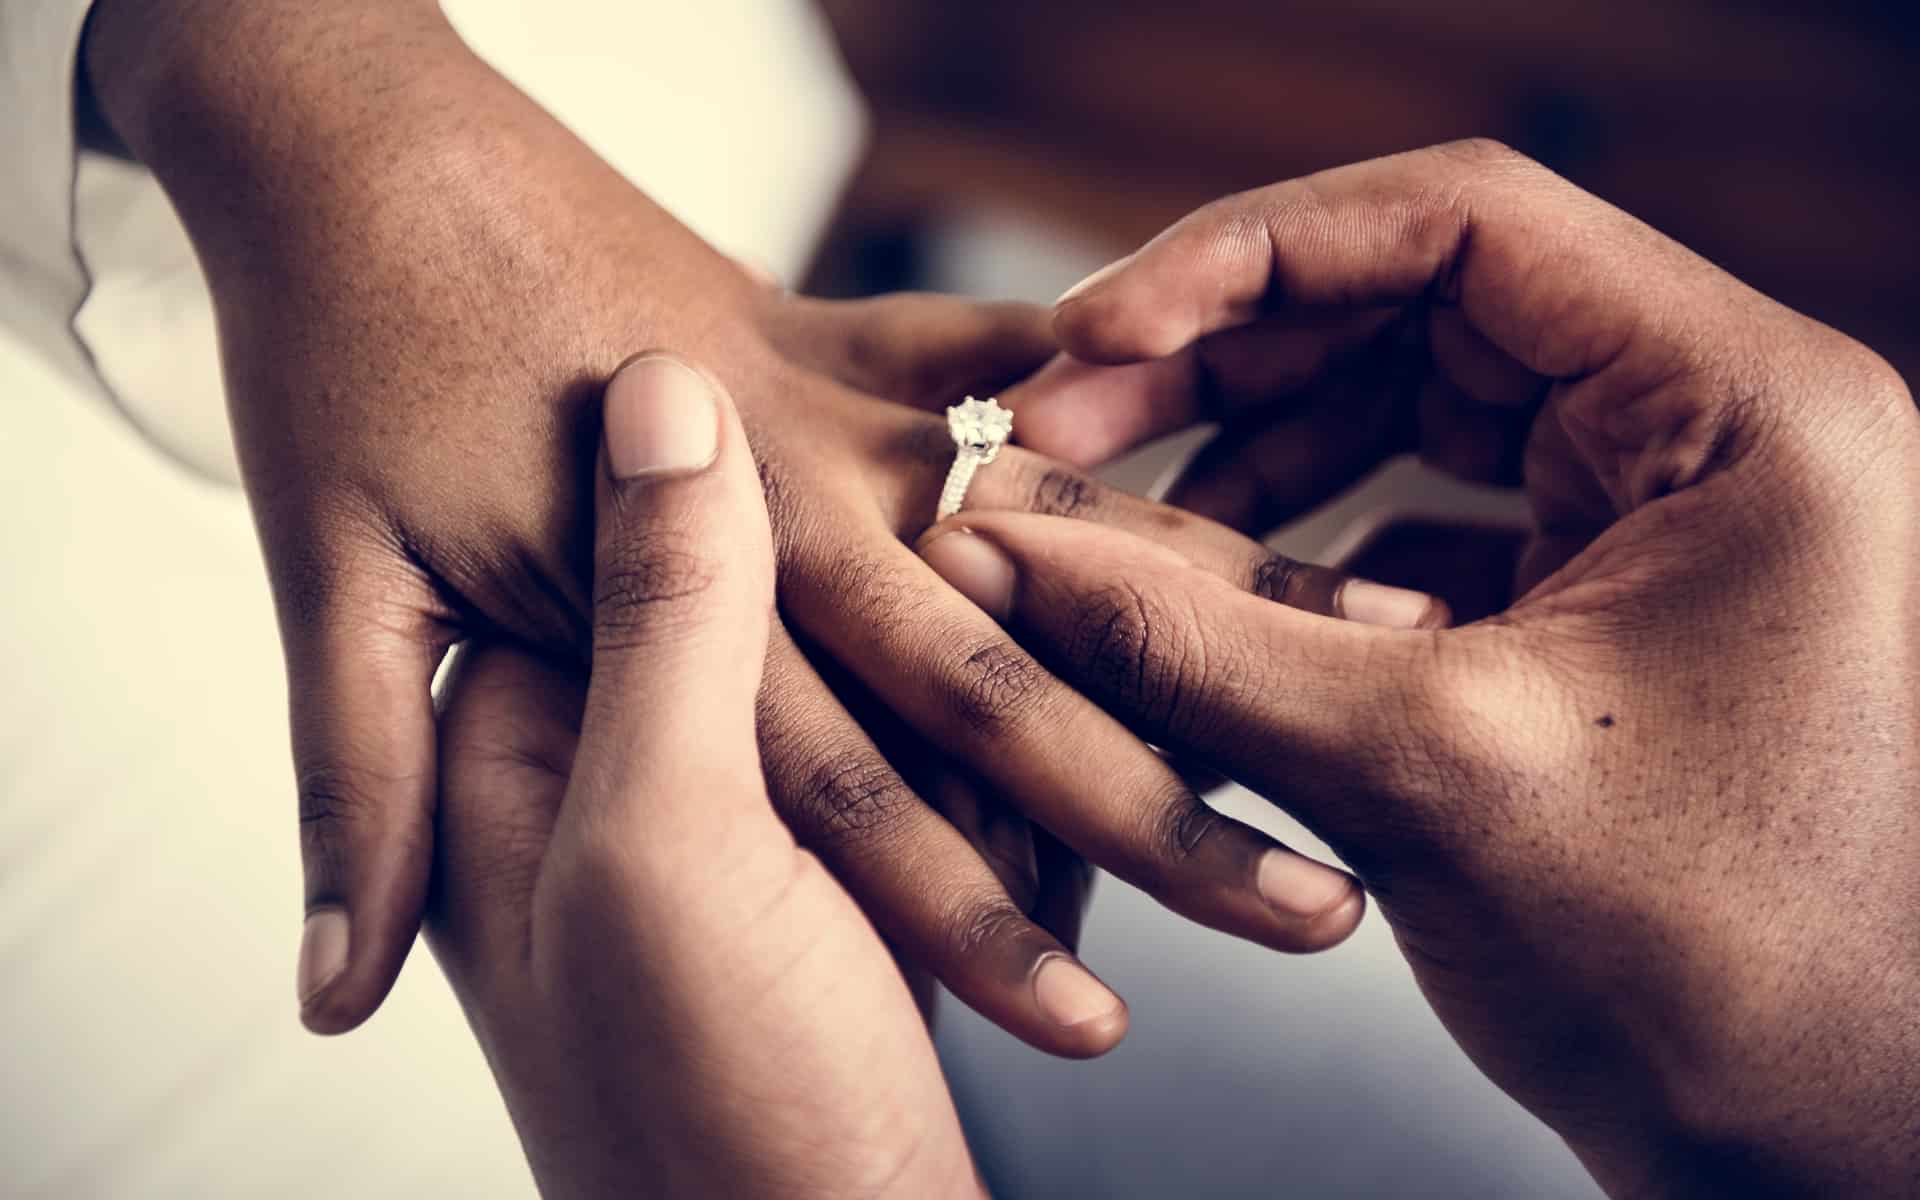 Le mariage, un idéal pour la femme ?